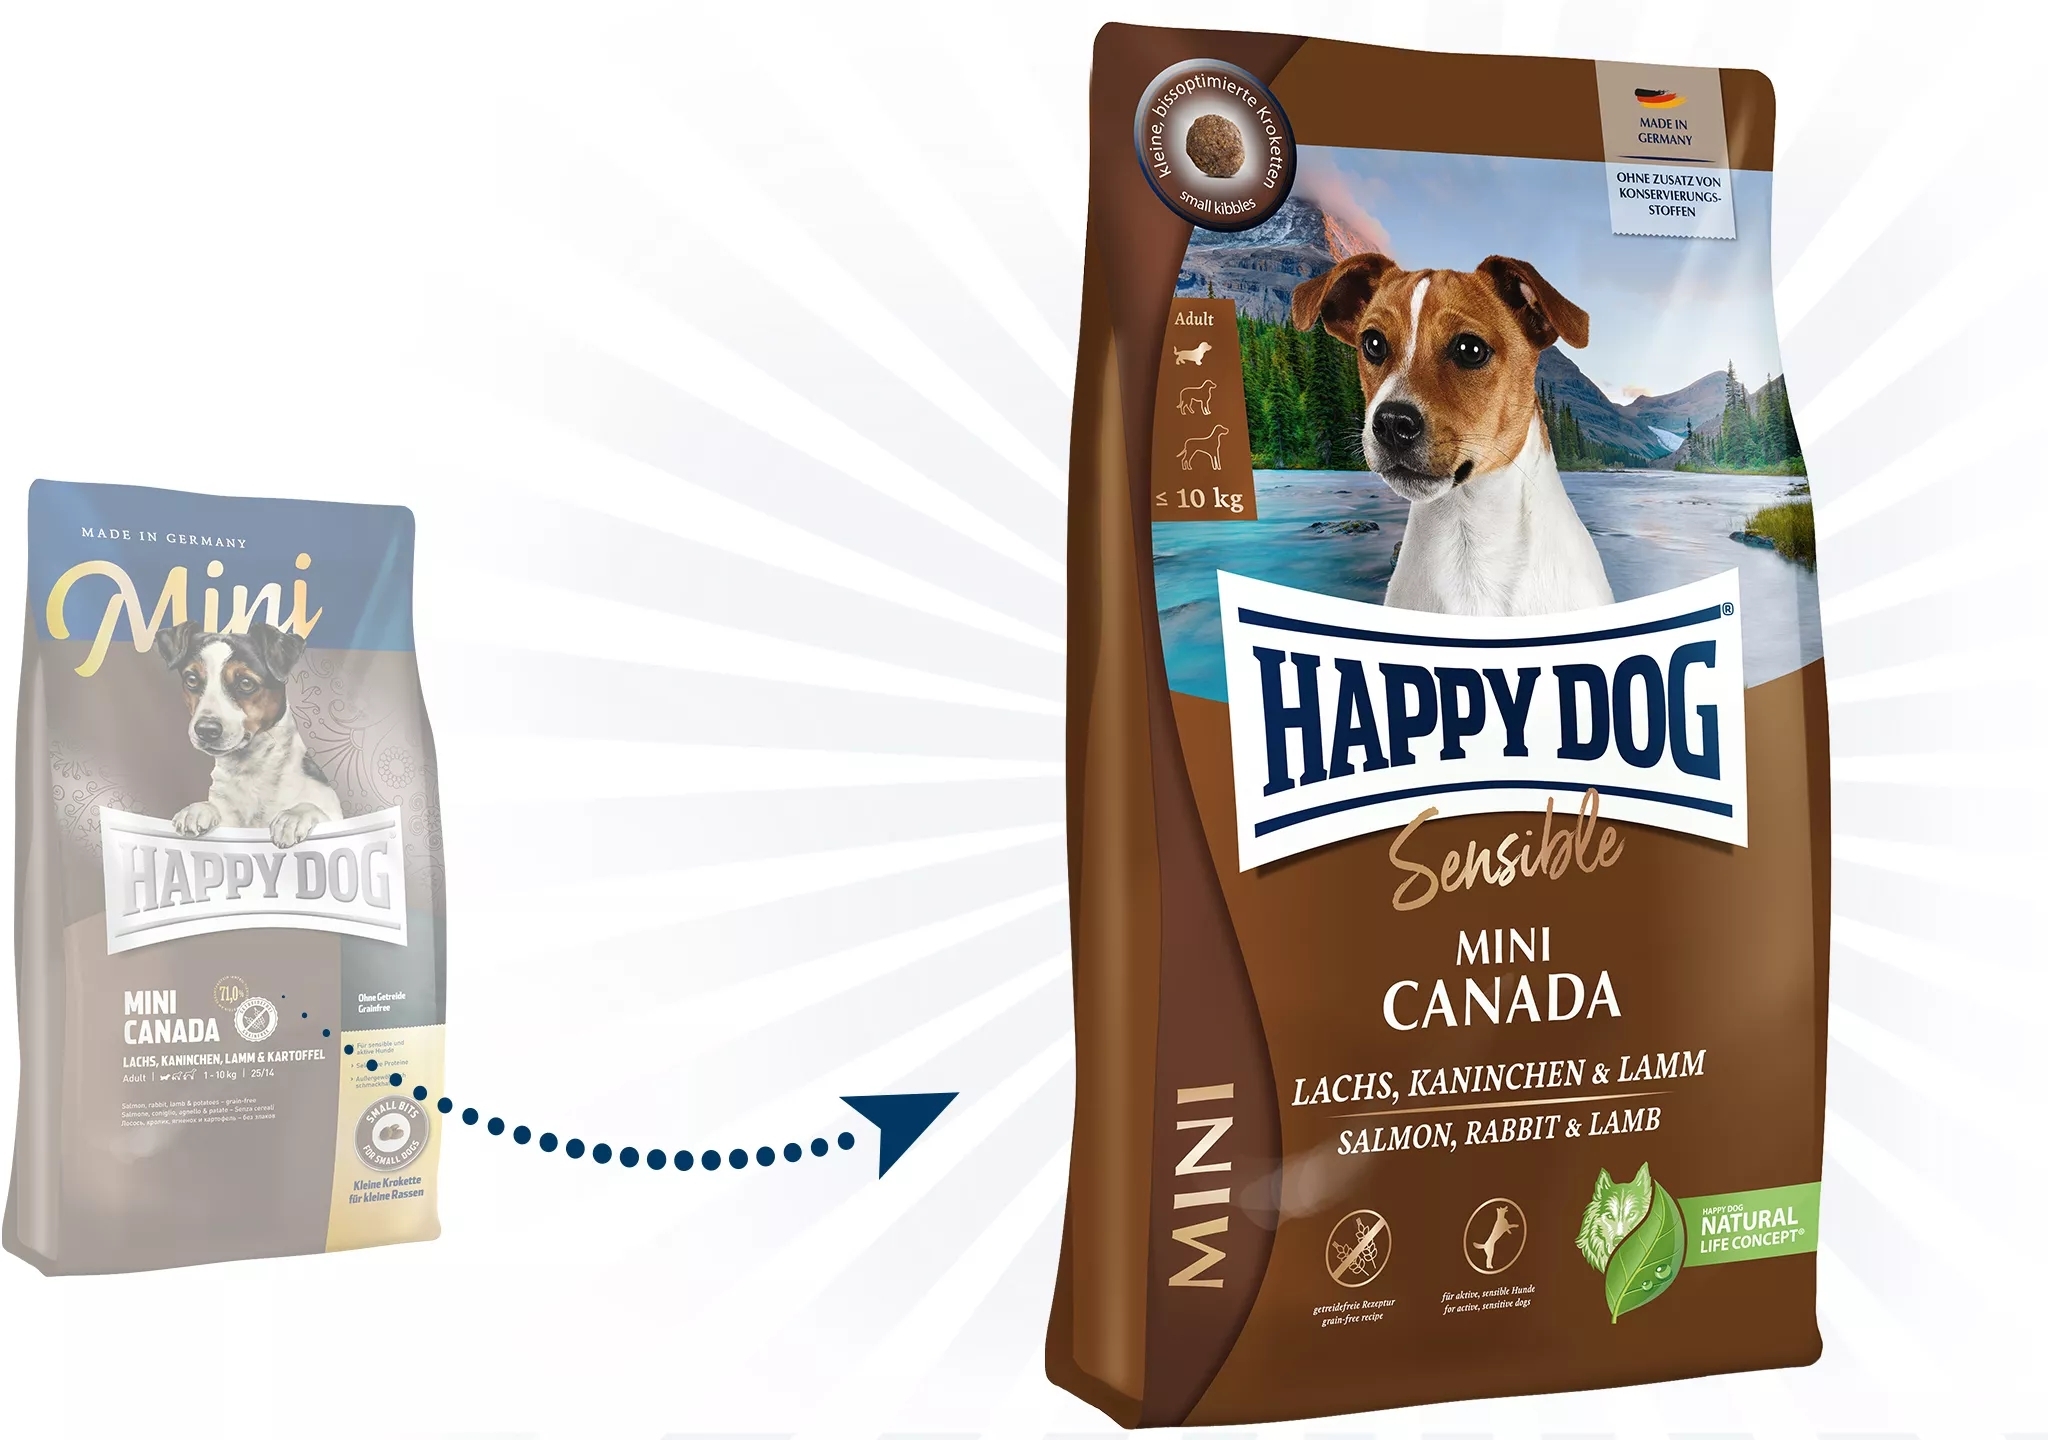 Happy Dog Sensible Mini Canada - zoom